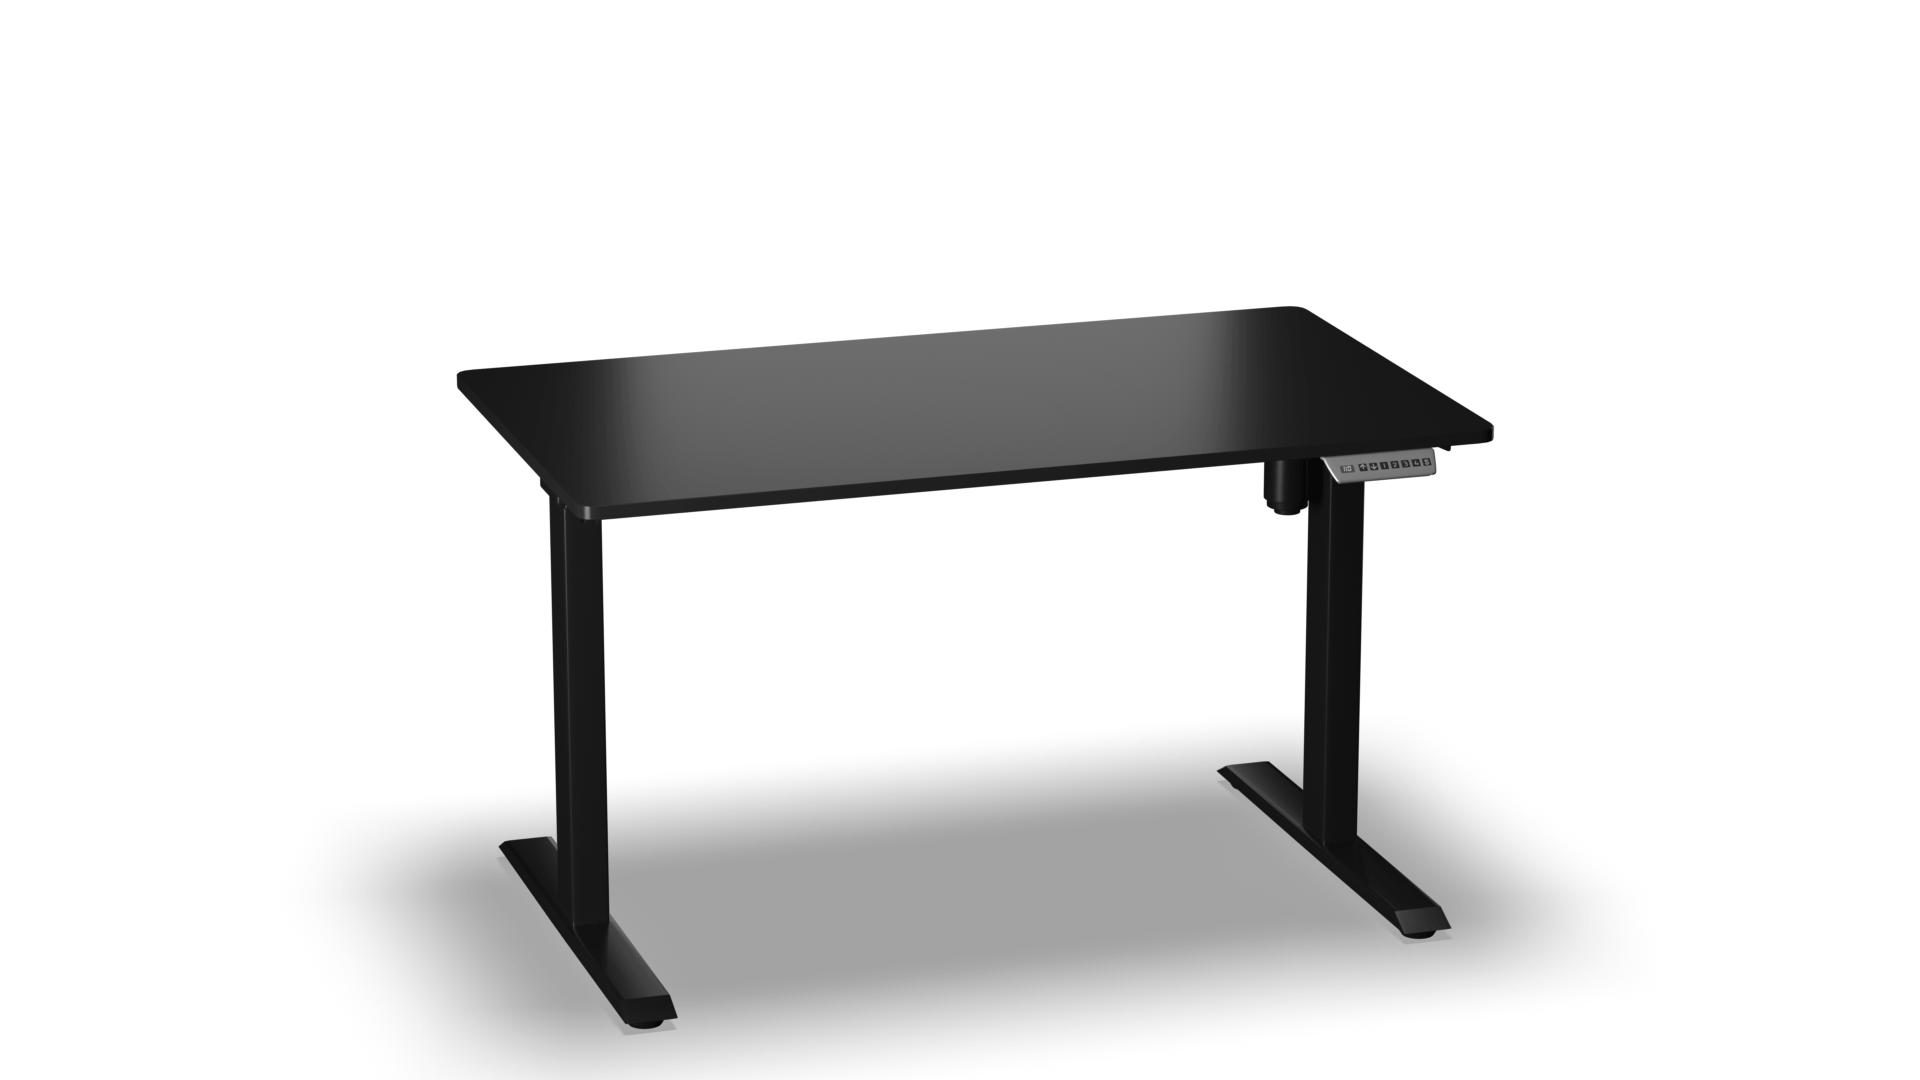  โต๊ะปรับระดับสูงต่ำ E-TABLE PREMIUM